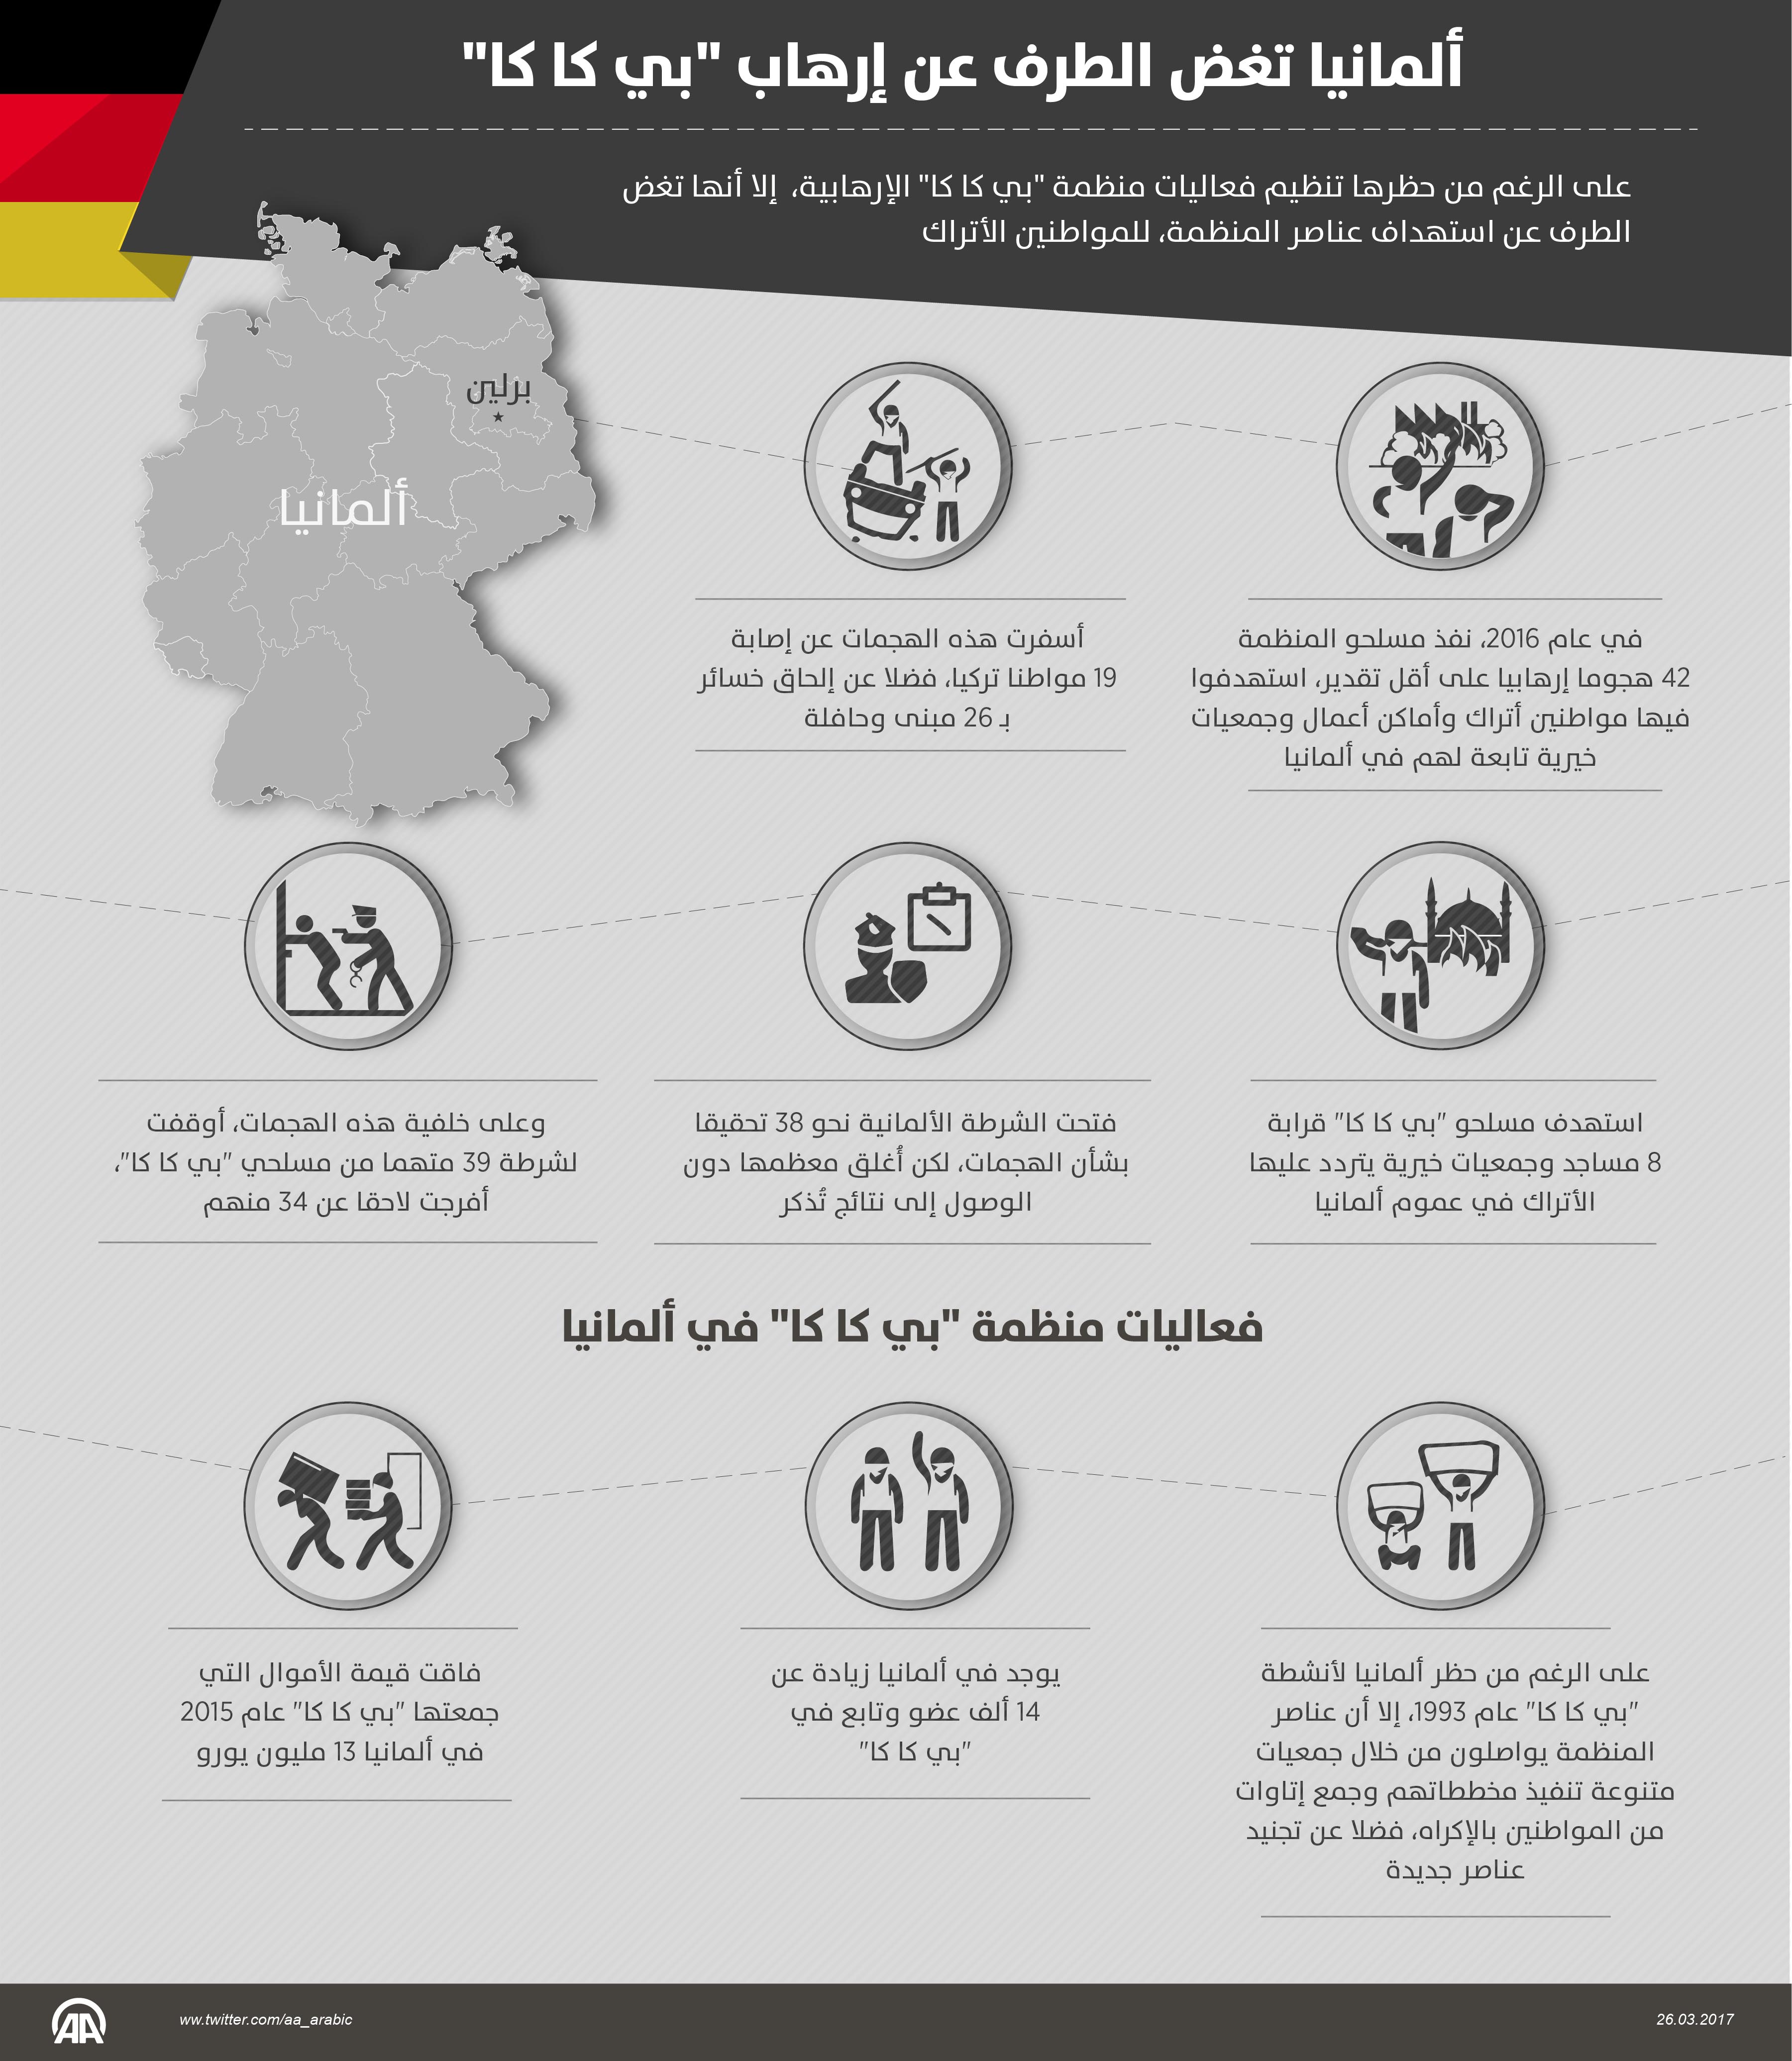 ألمانيا تغض الطرف عن إرهاب "بي كا كا"